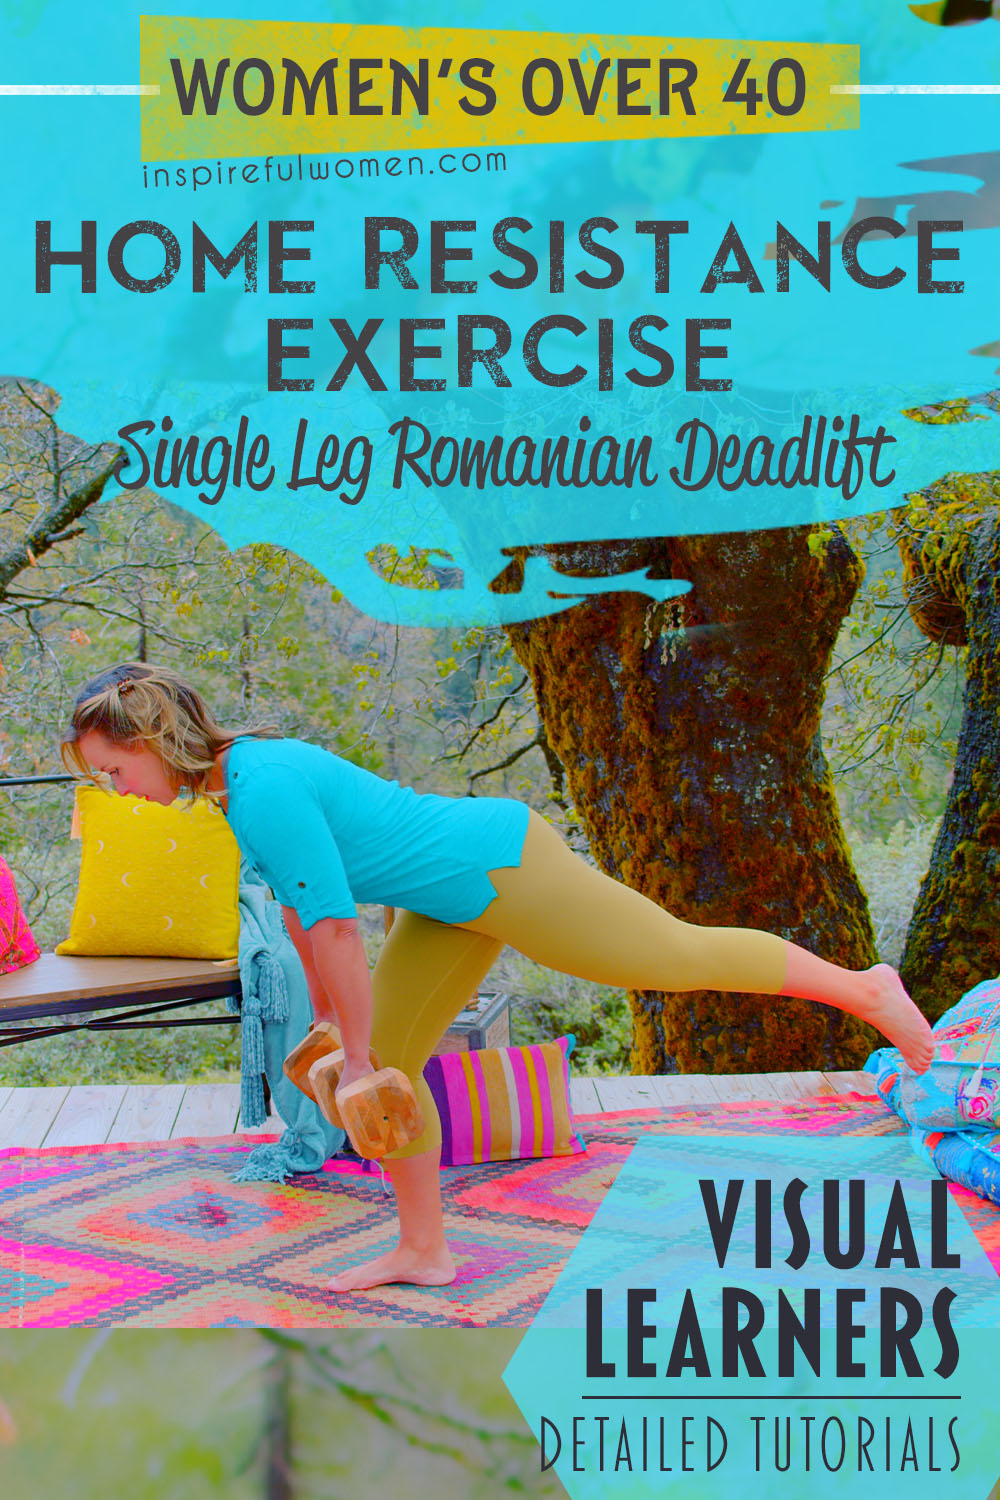 one-straight-leg-deadlift-romanian-dumbbell-squat-alternative-hamstrings-glutes-exercise-women-40+